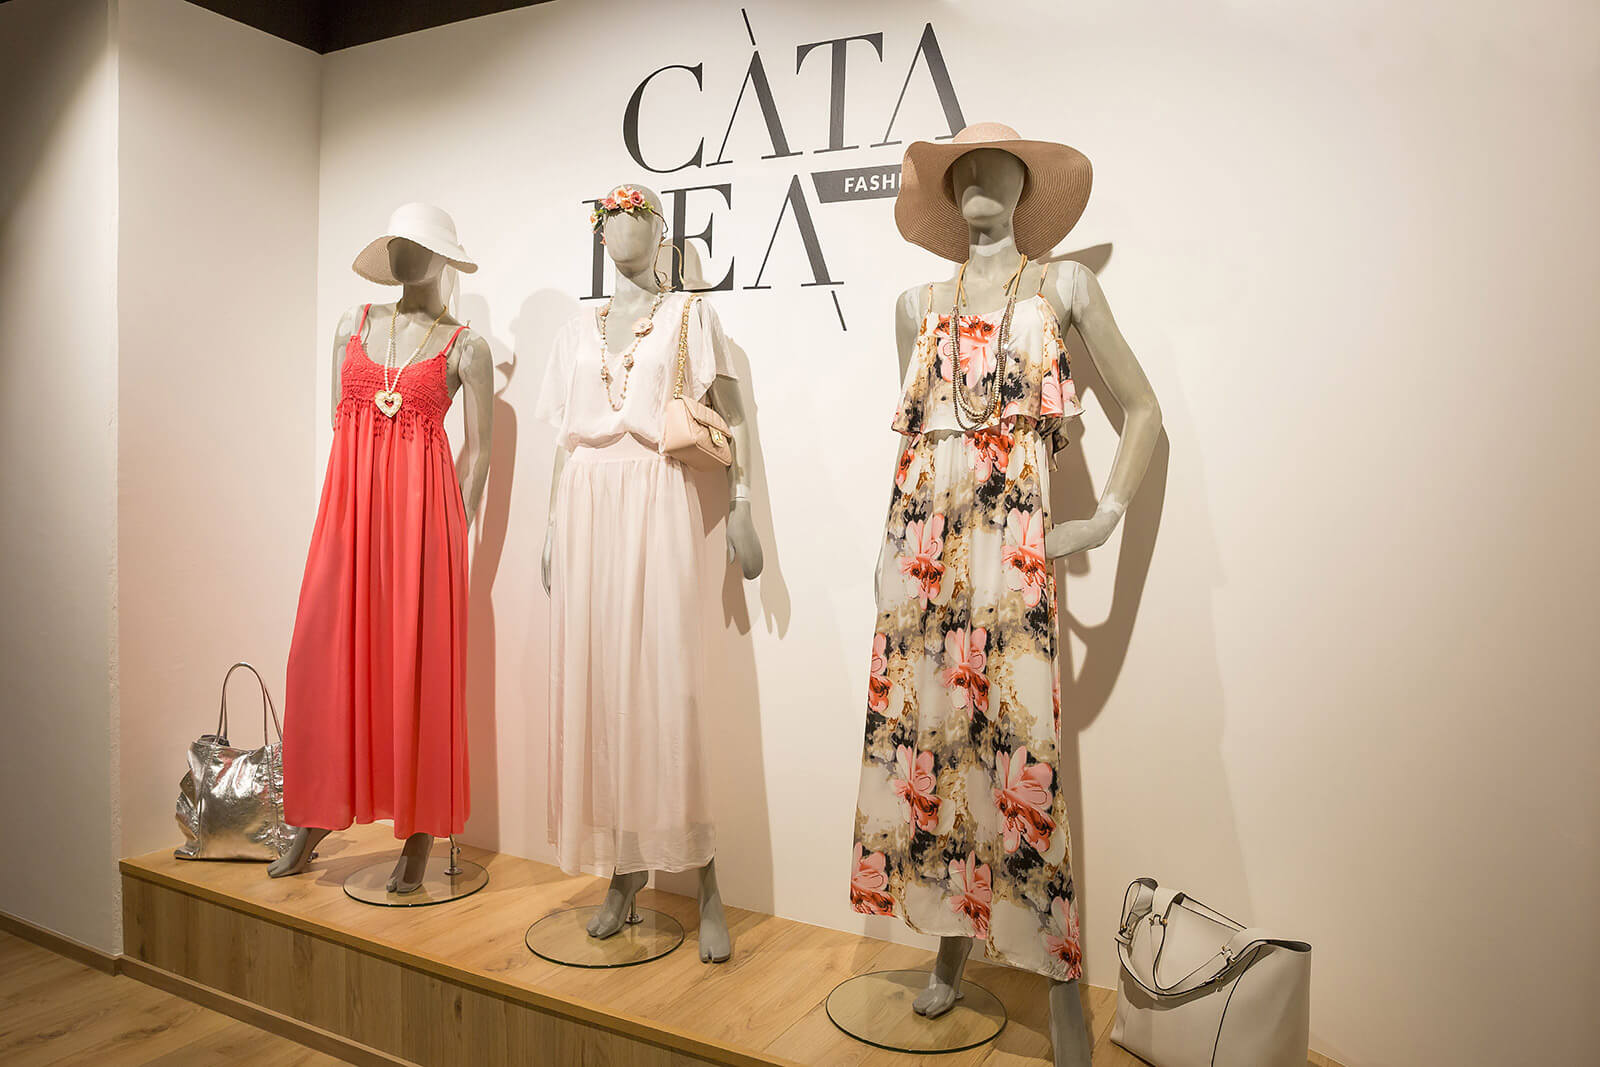 Catalea Fashion Wien